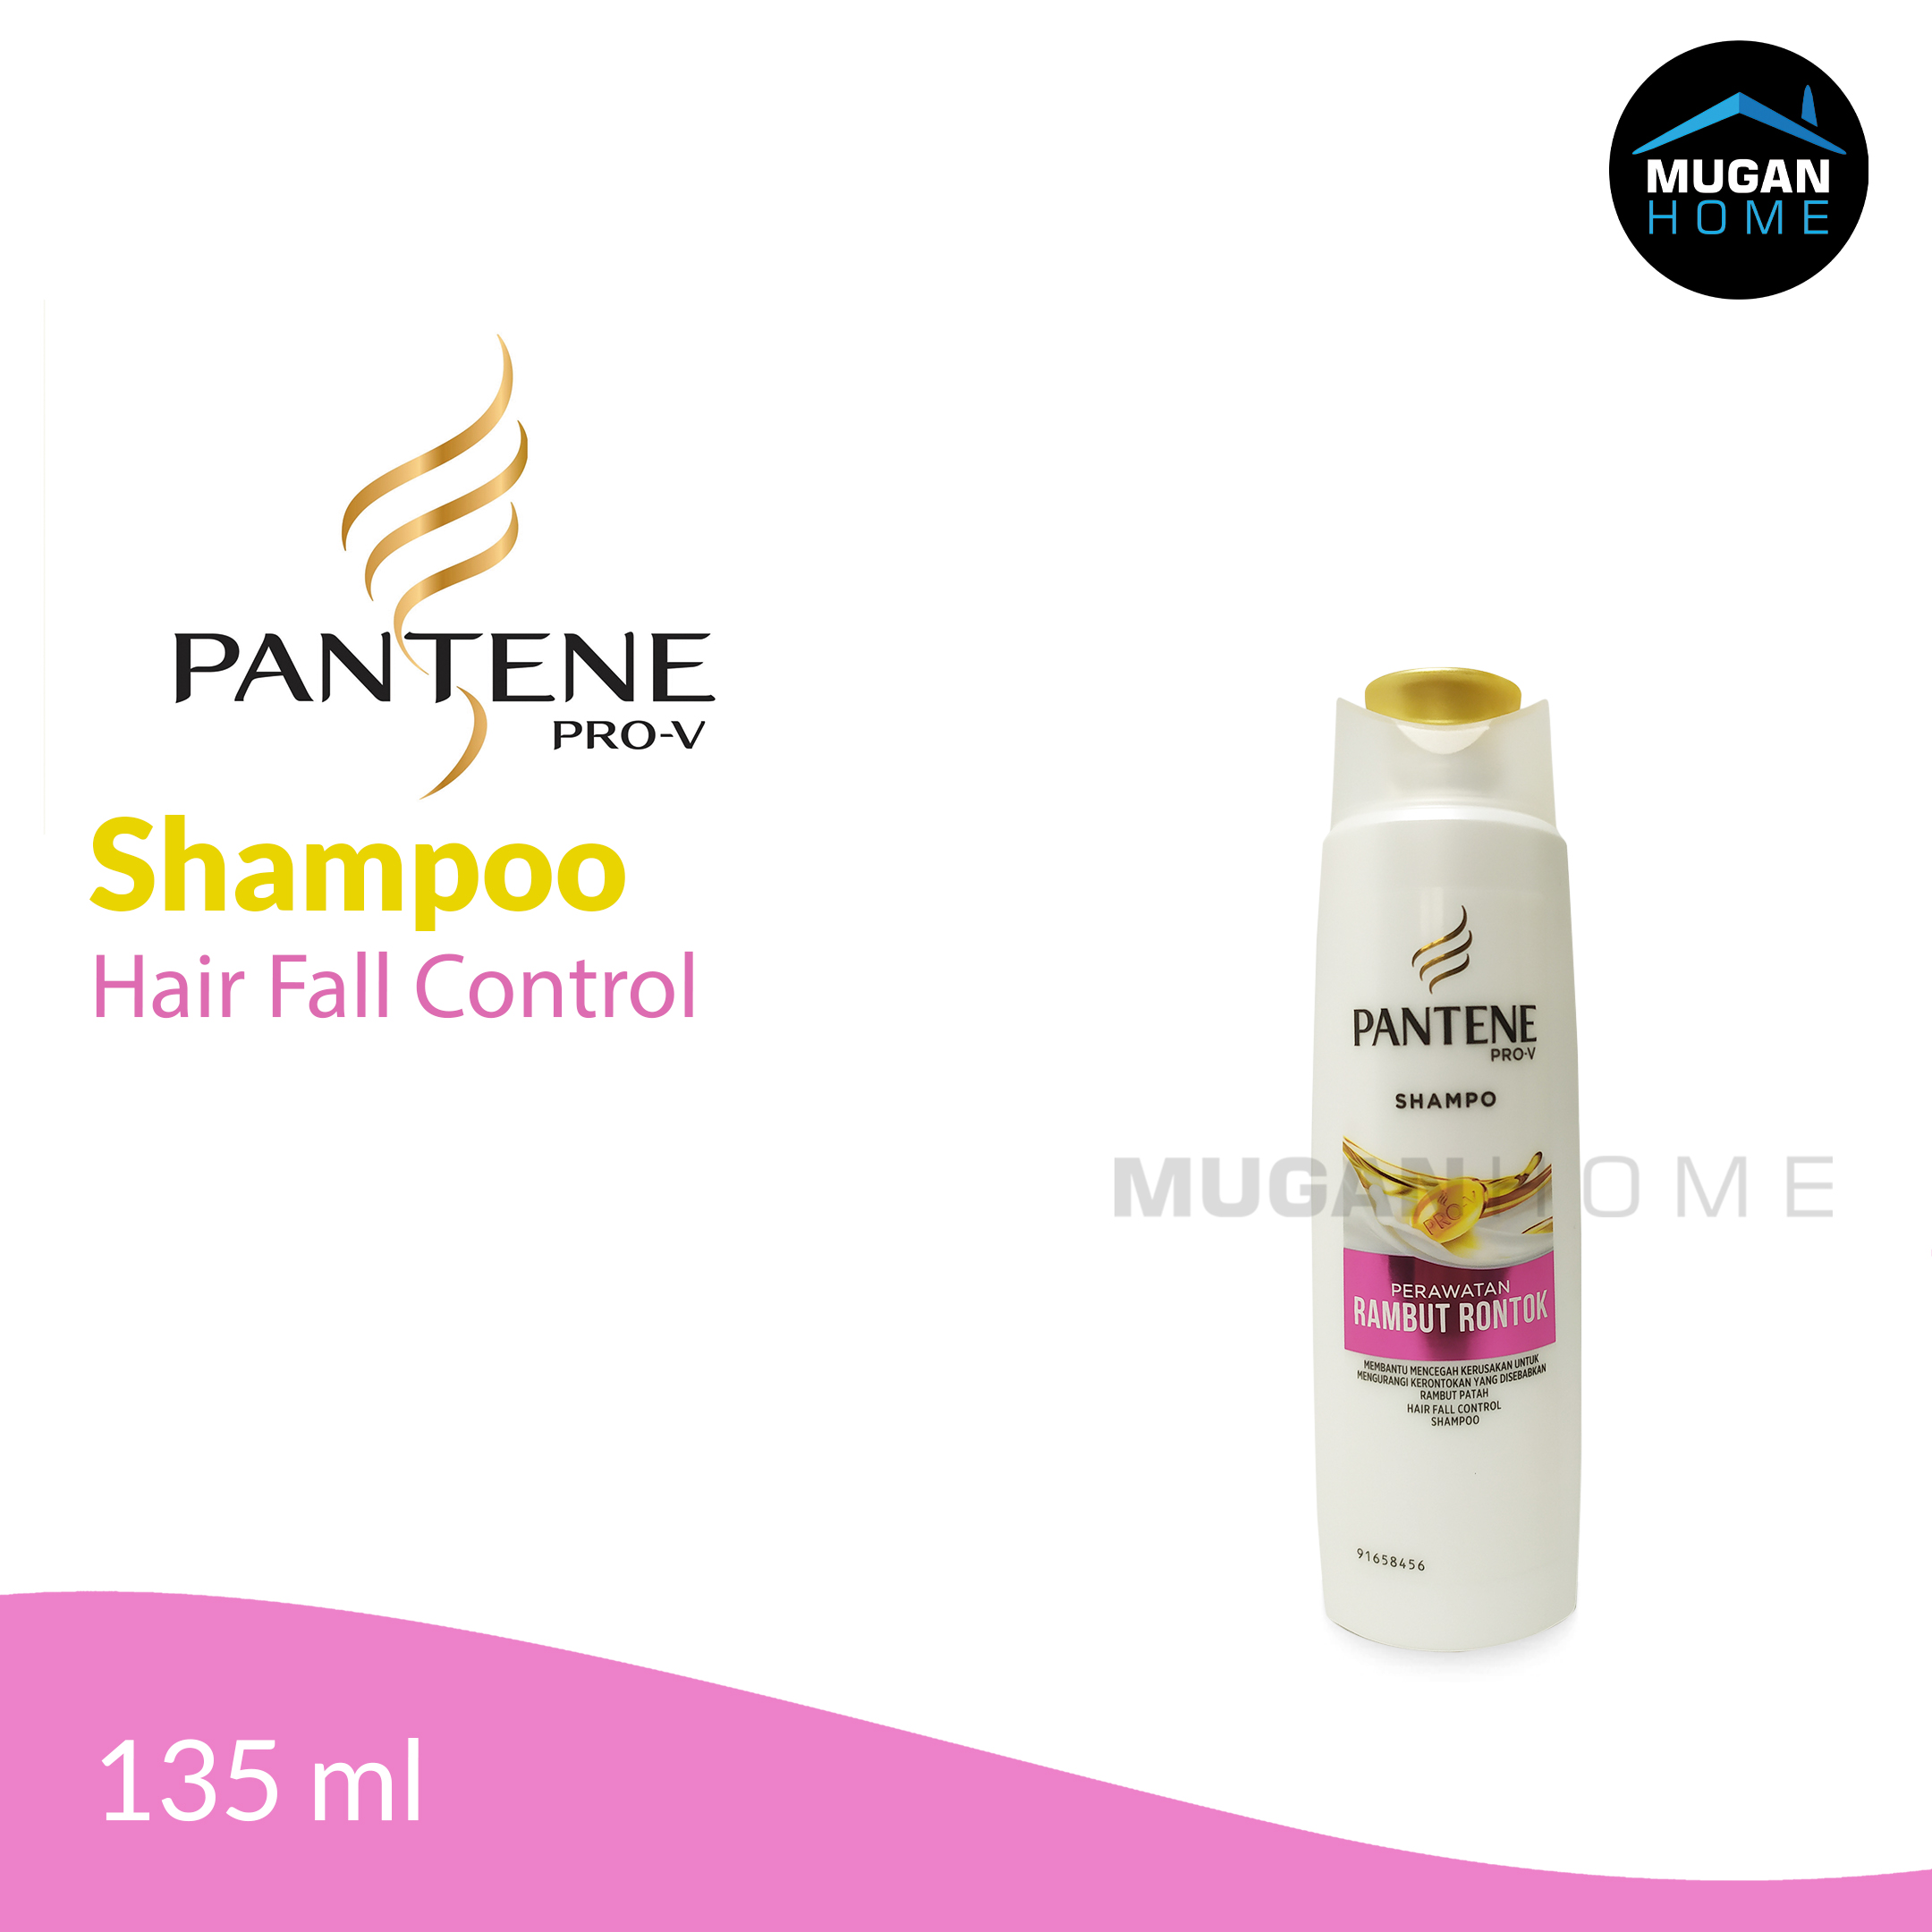 PANTENE SHAMPOO 135ML HAIR FALL CONTROL